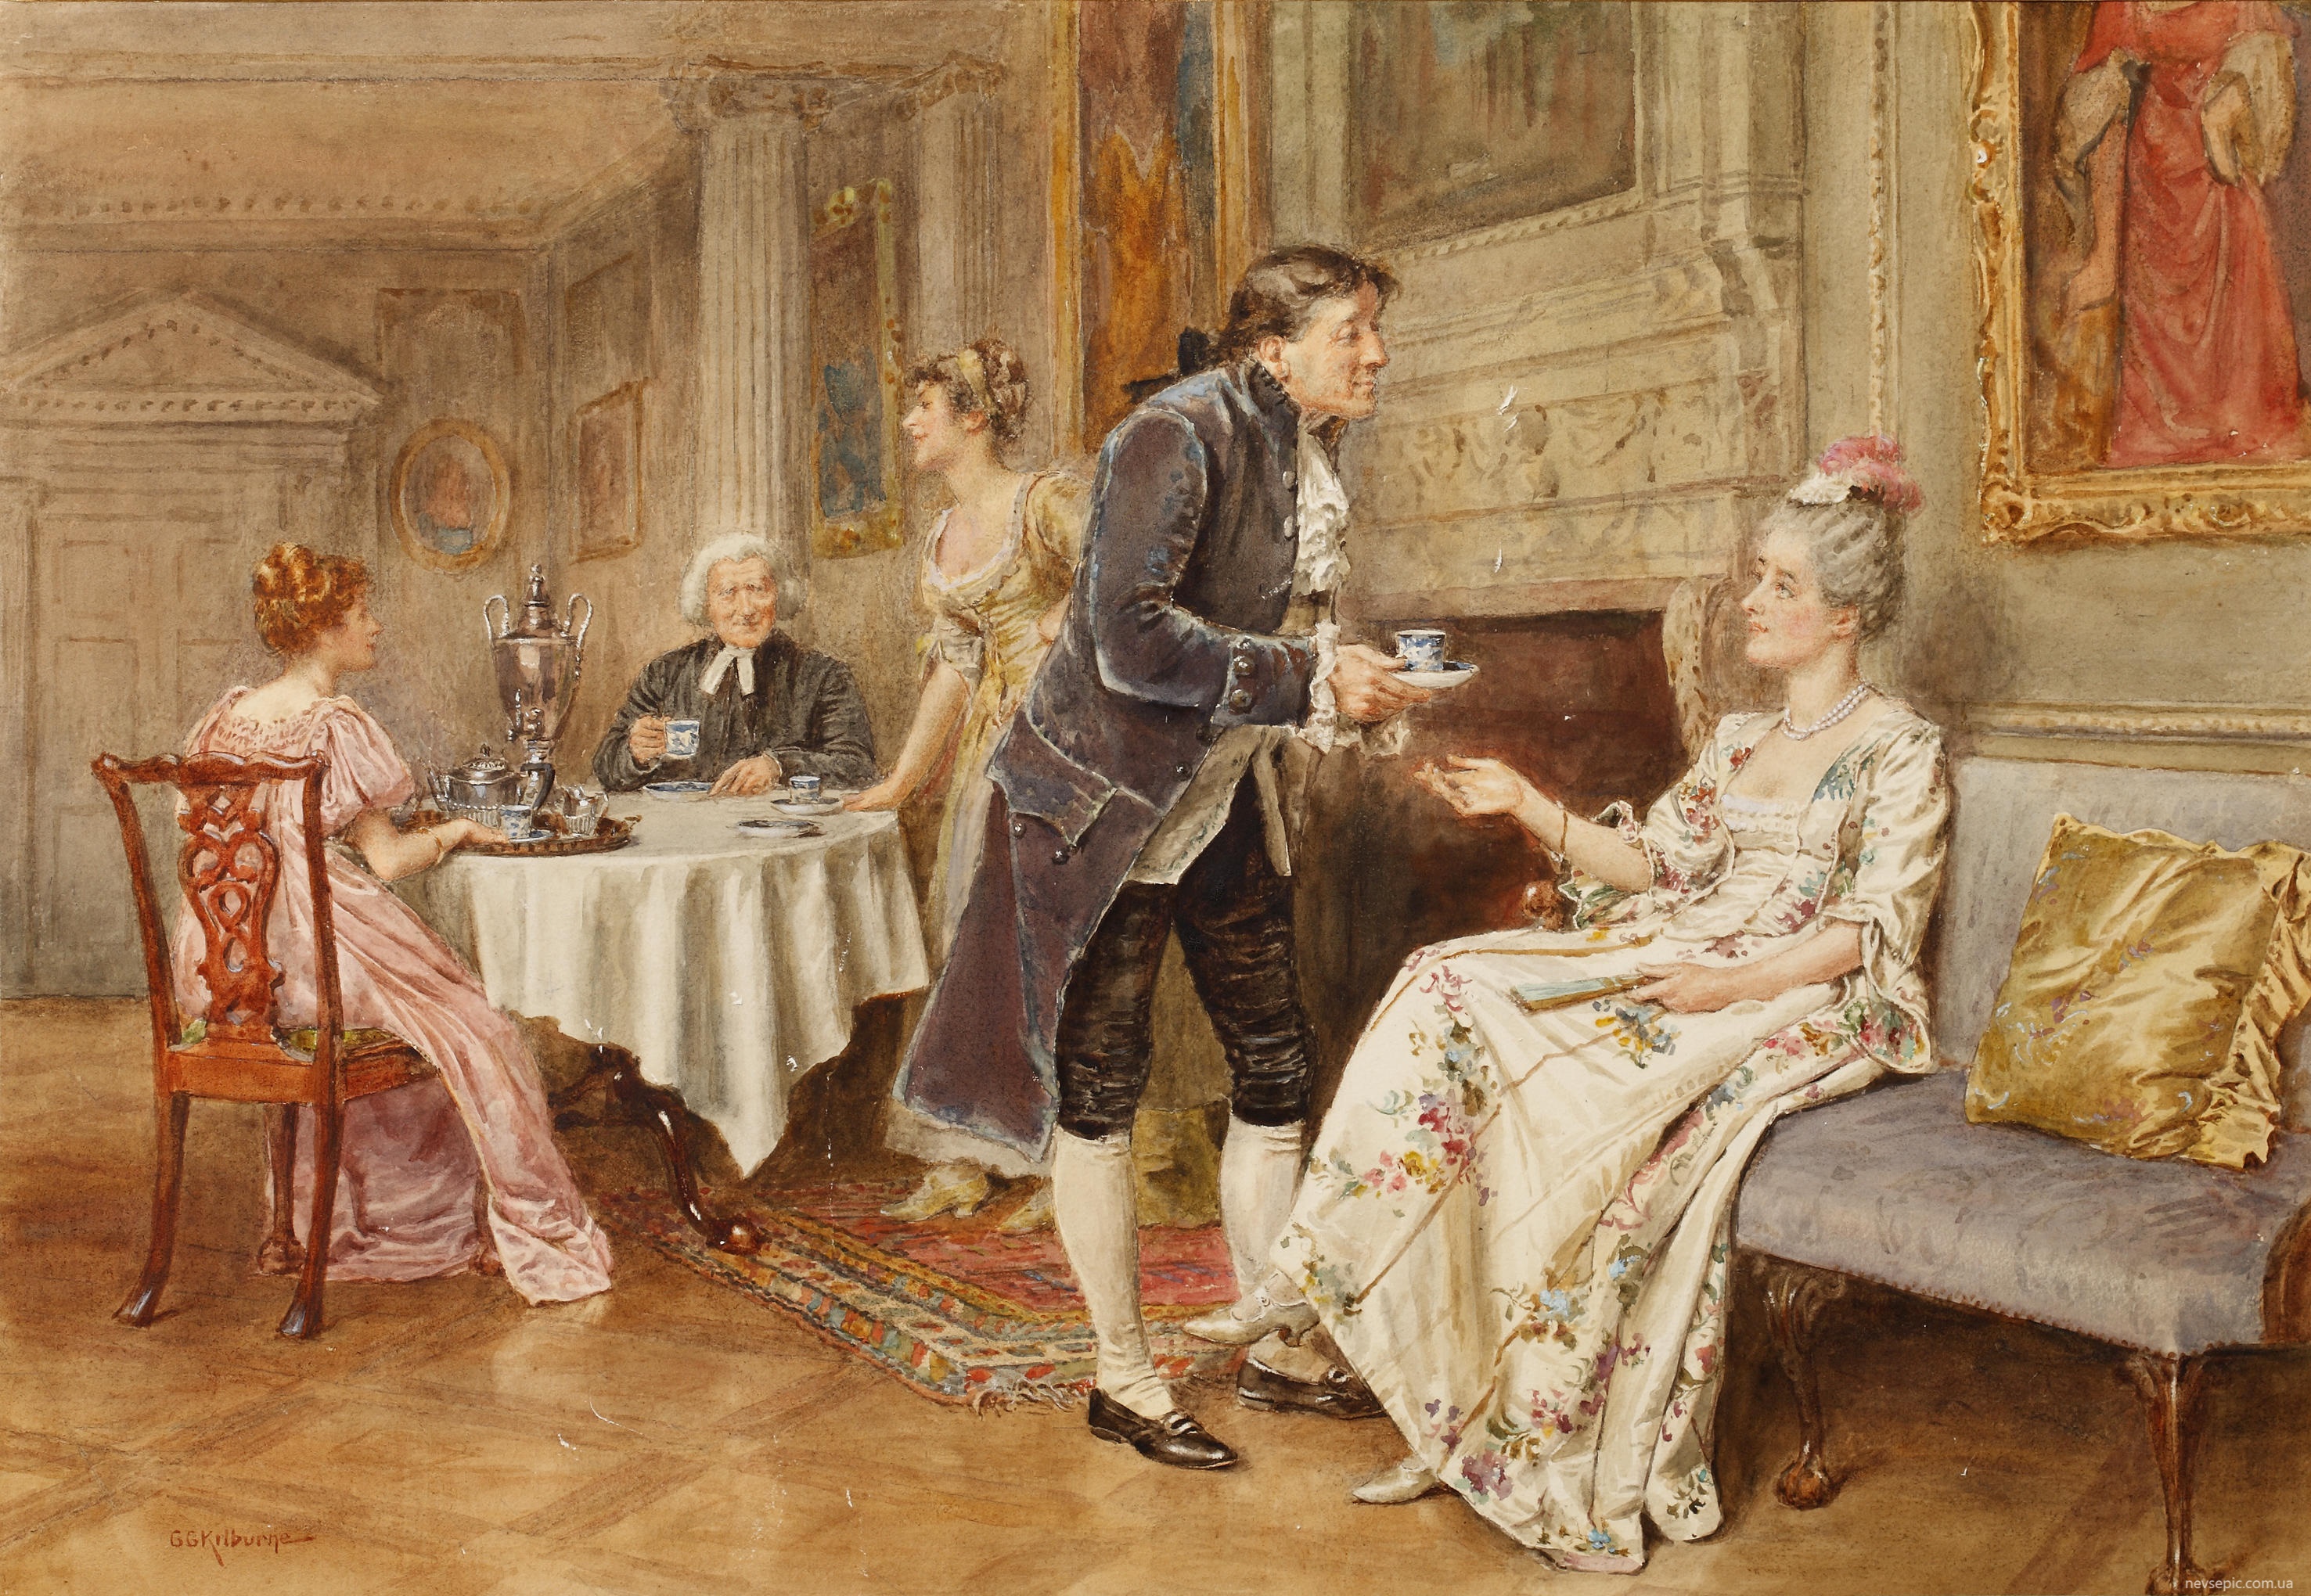 Поздравление 19 век. Джордж Гудвин Килберн художник. Чаепитие Англия 19 век. Английская аристократия 18 века. Аристократия Англия 18 век.